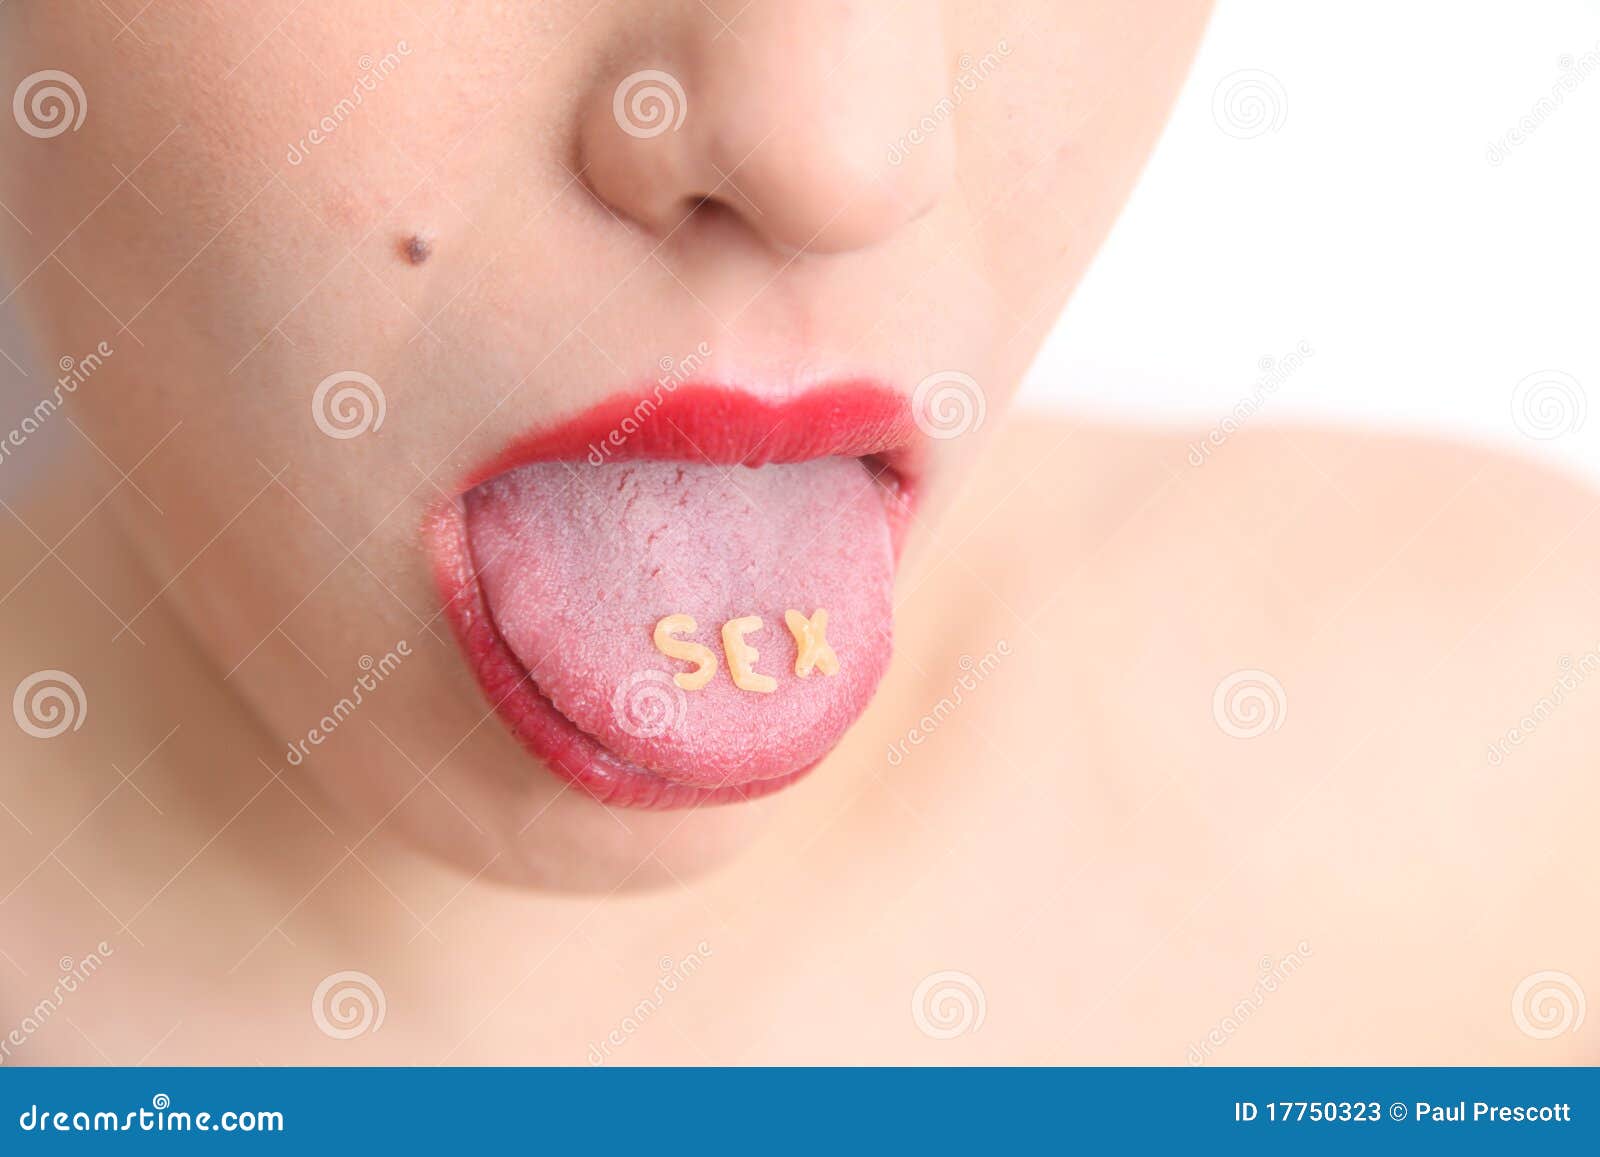 Tongue Stock Image Image Of Kiss Female Fashion